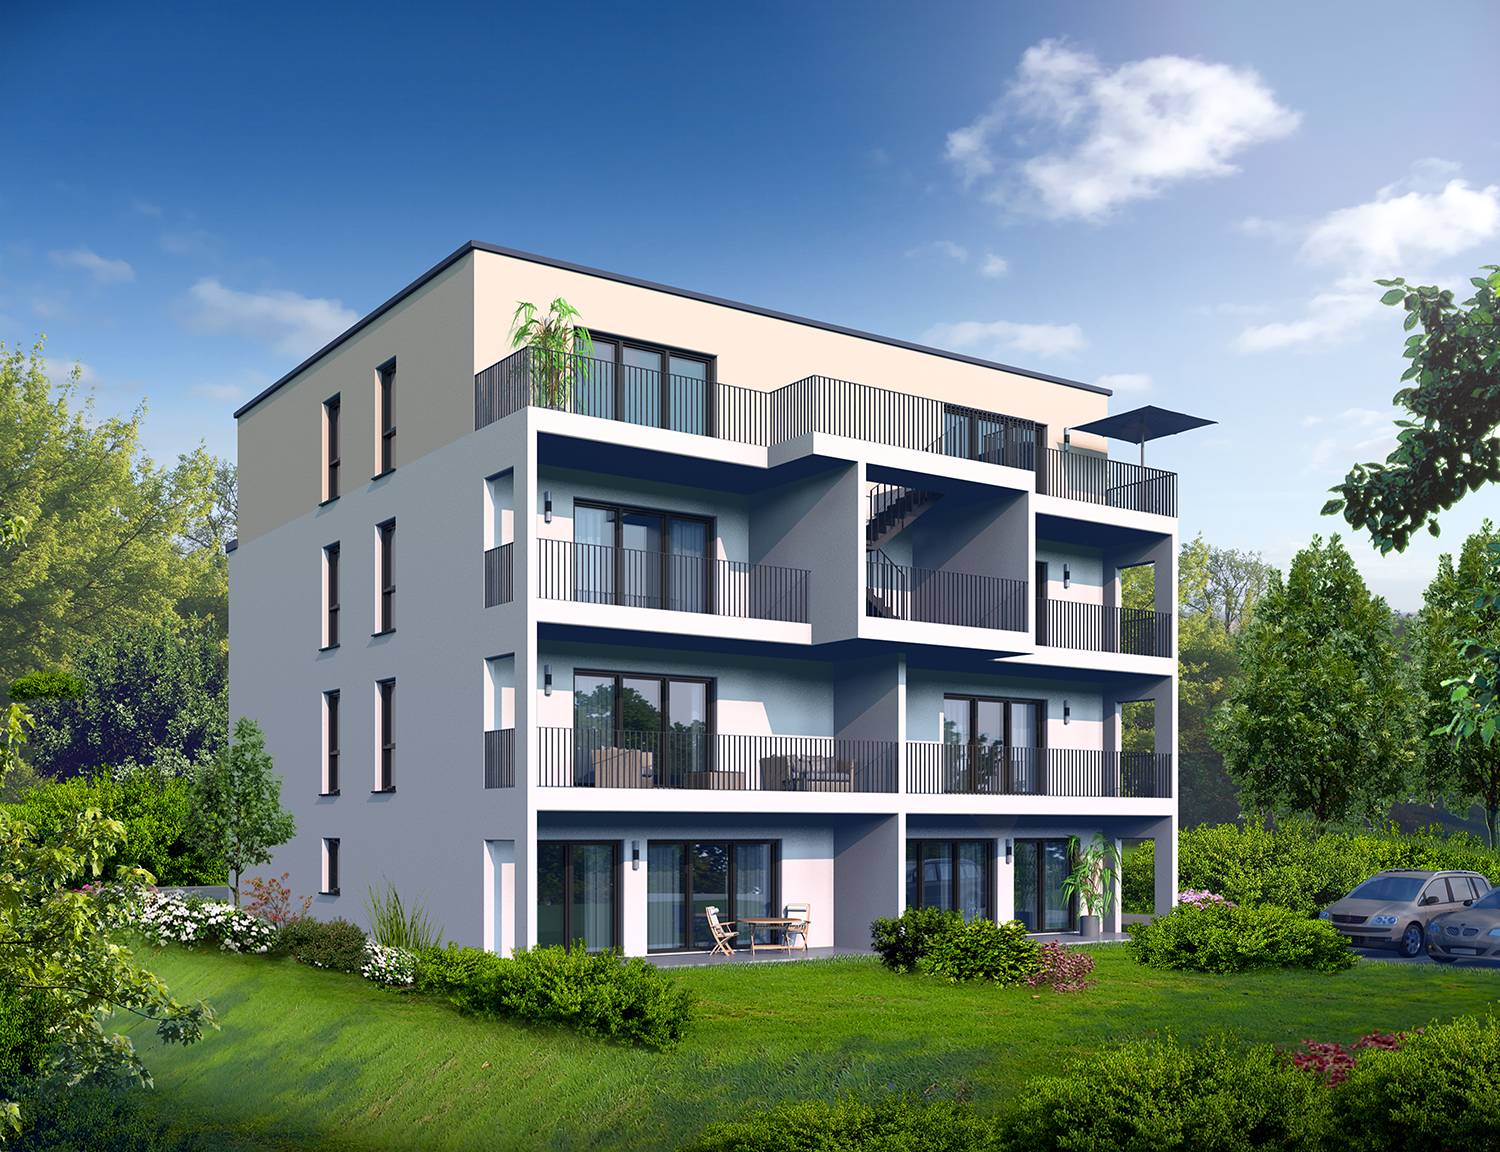 Die 3D-Architekturvisualisierung des Bauvorhabens zum Bau eines Mehrfamilienhauses in Saarwellingen 4. Die perspektivische Abbildung dieses Projektes (hier die Garten-/Terrassen-/Balkonenperspektive) beauftragte die Firma LF Projekt Management GmbH aus 66793 Saarwellingen im Jahre 2023.